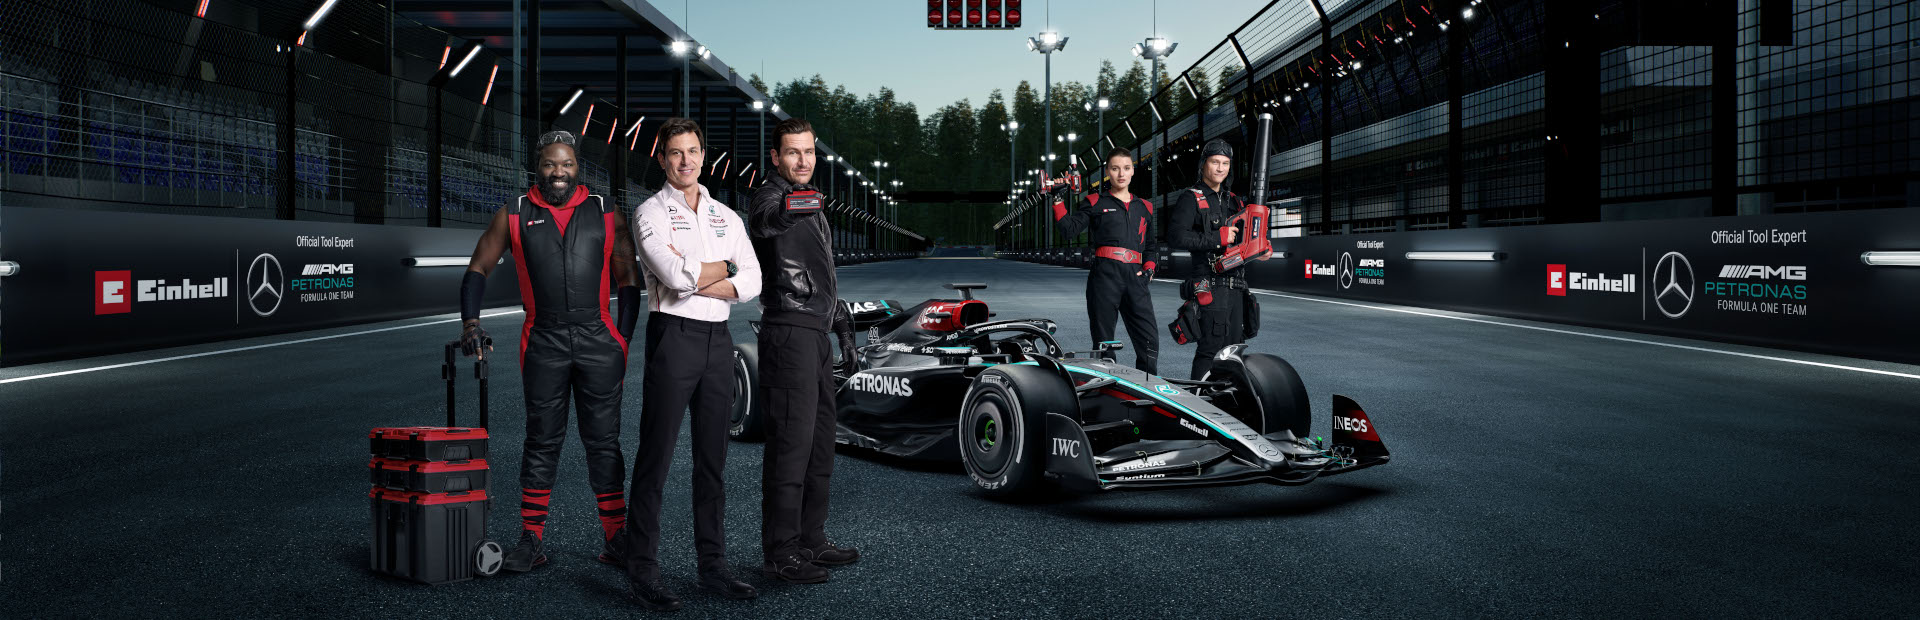 e team members stand around formula 1 car